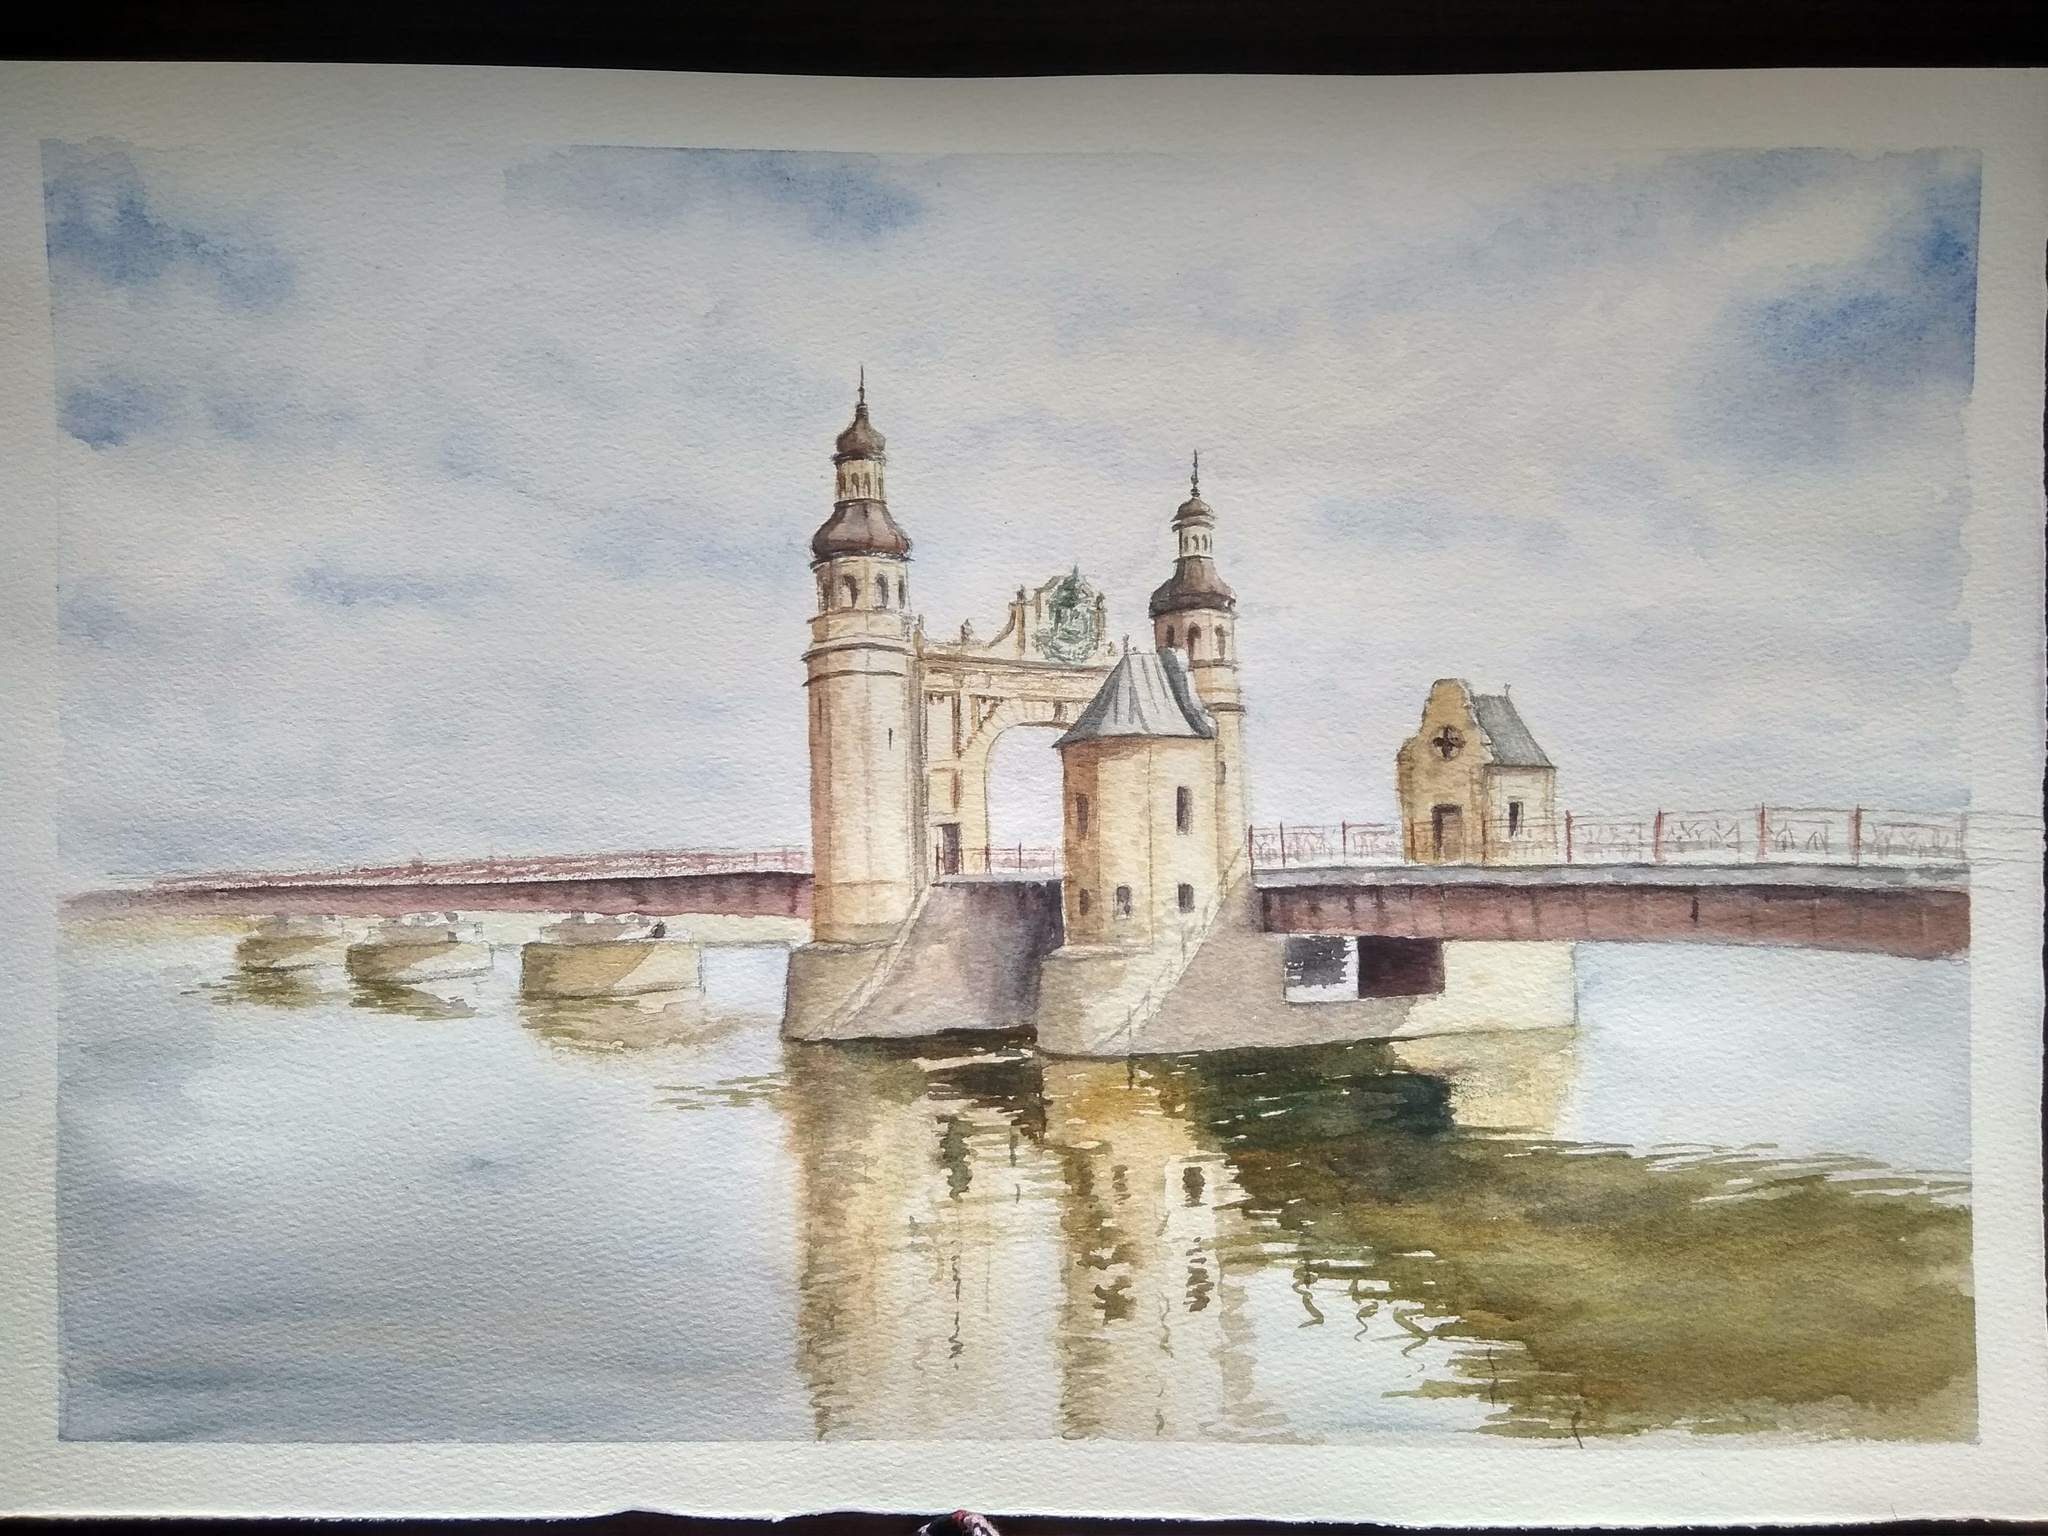 Мост королевы Луизы Калининград рисунок